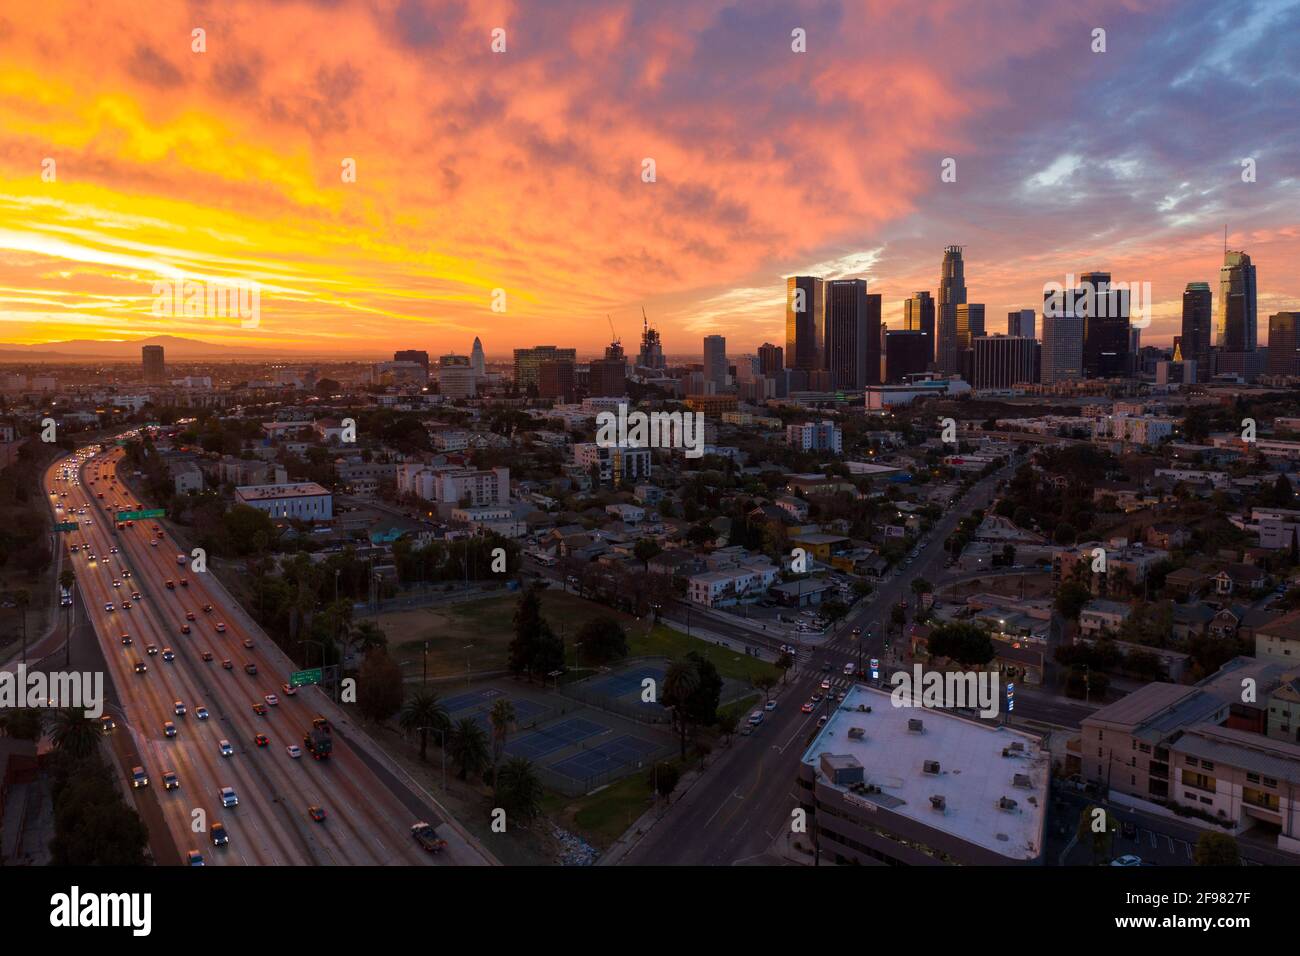 Un lever de soleil spectaculaire au-dessus du centre-ville de Los Angeles et du Hollywood 101 Autoroute à l'aube Banque D'Images